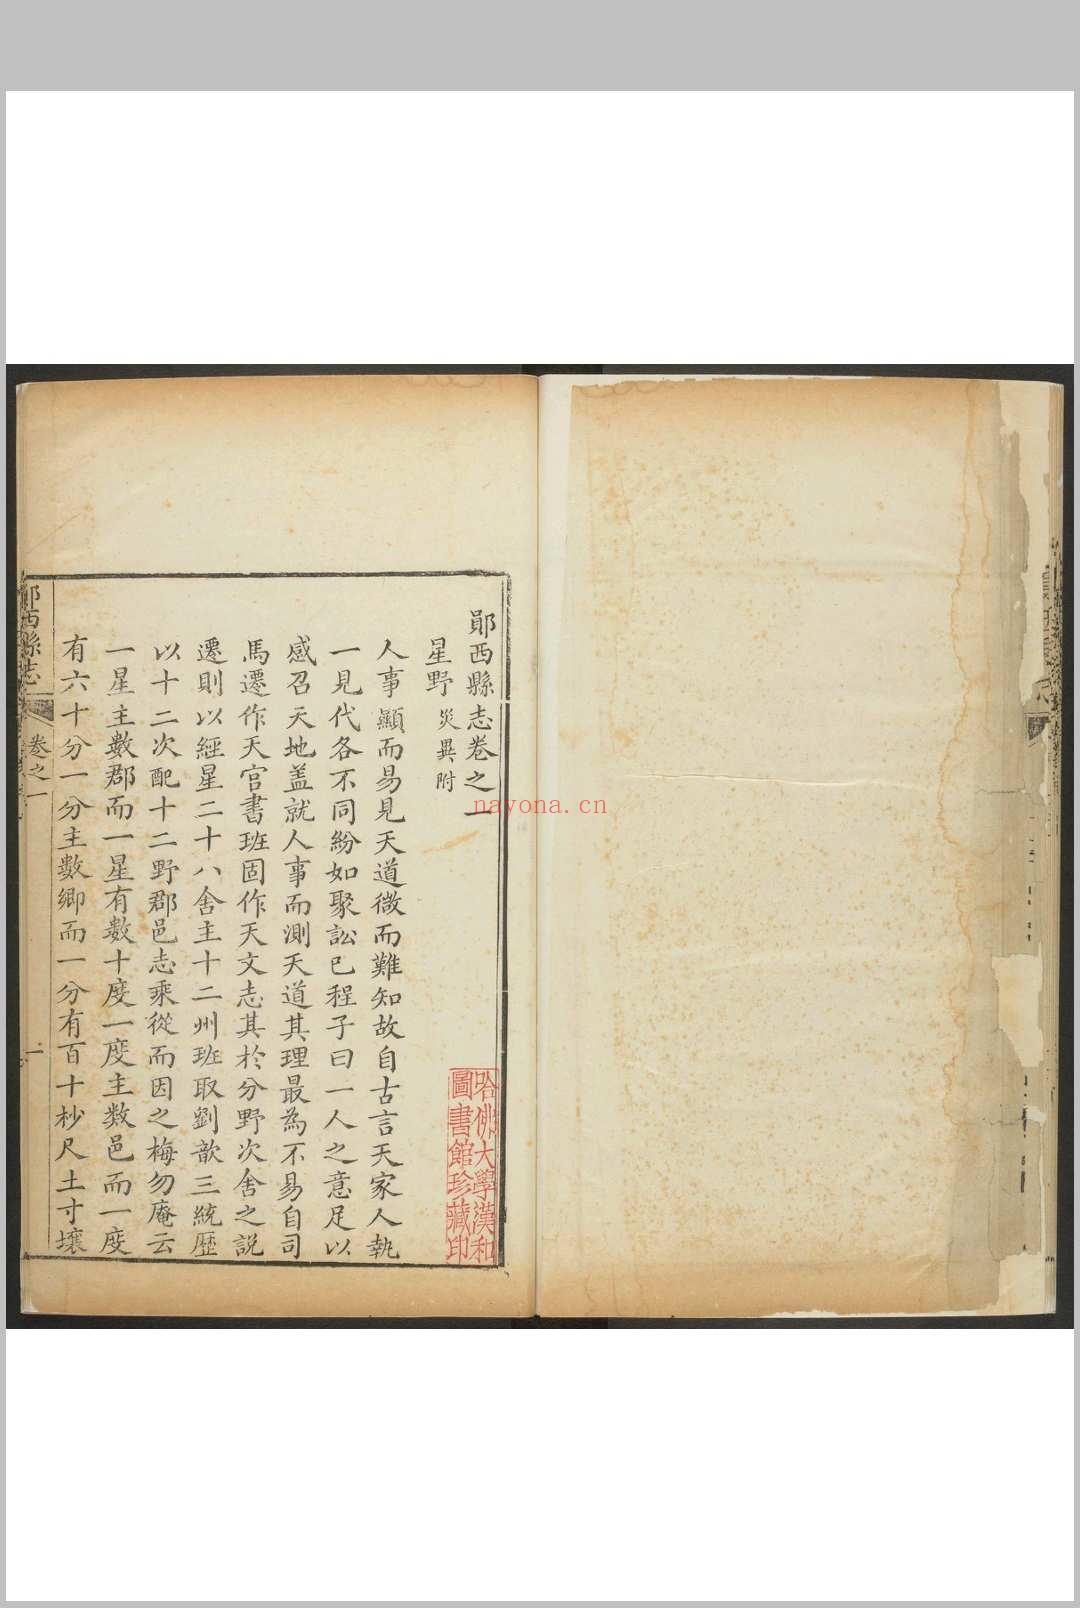 郧西县志 20卷 张道南纂修.乾隆42年 [1777]